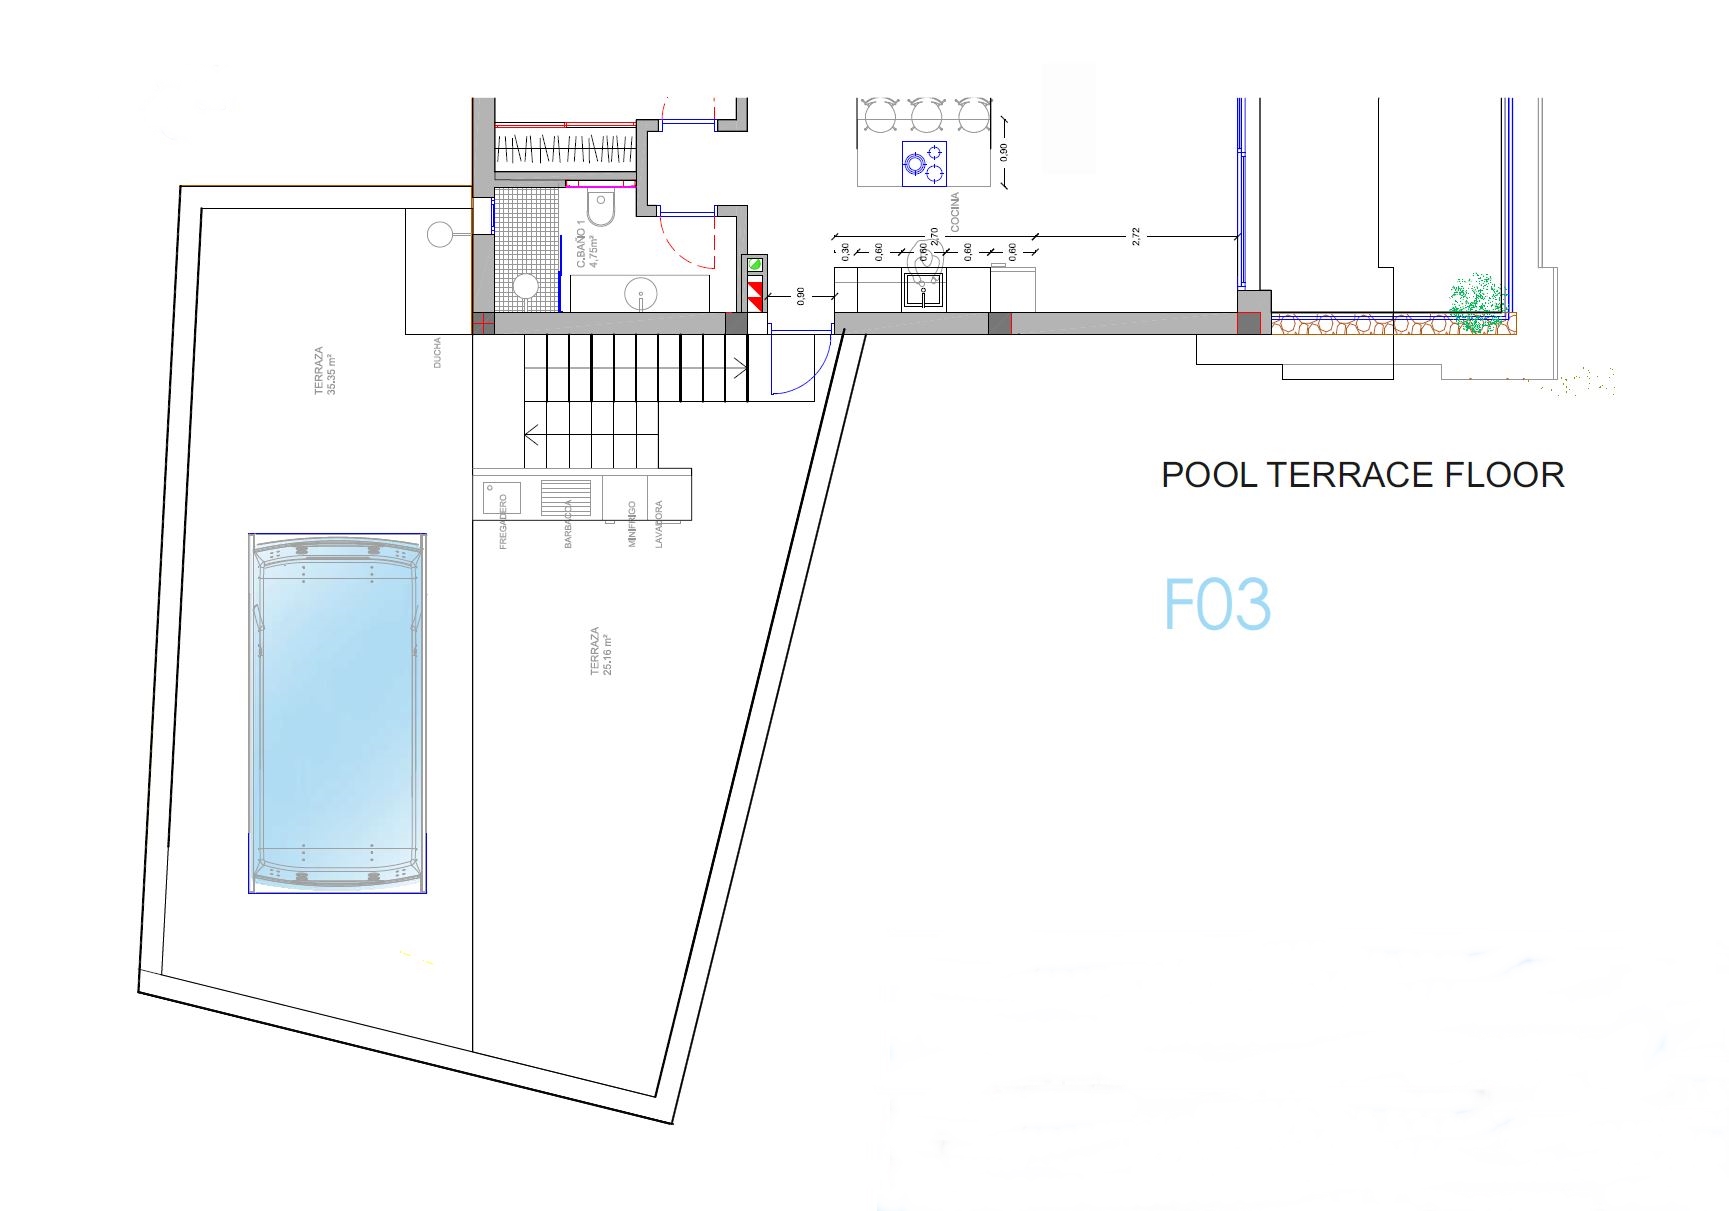 Pool terrace floor